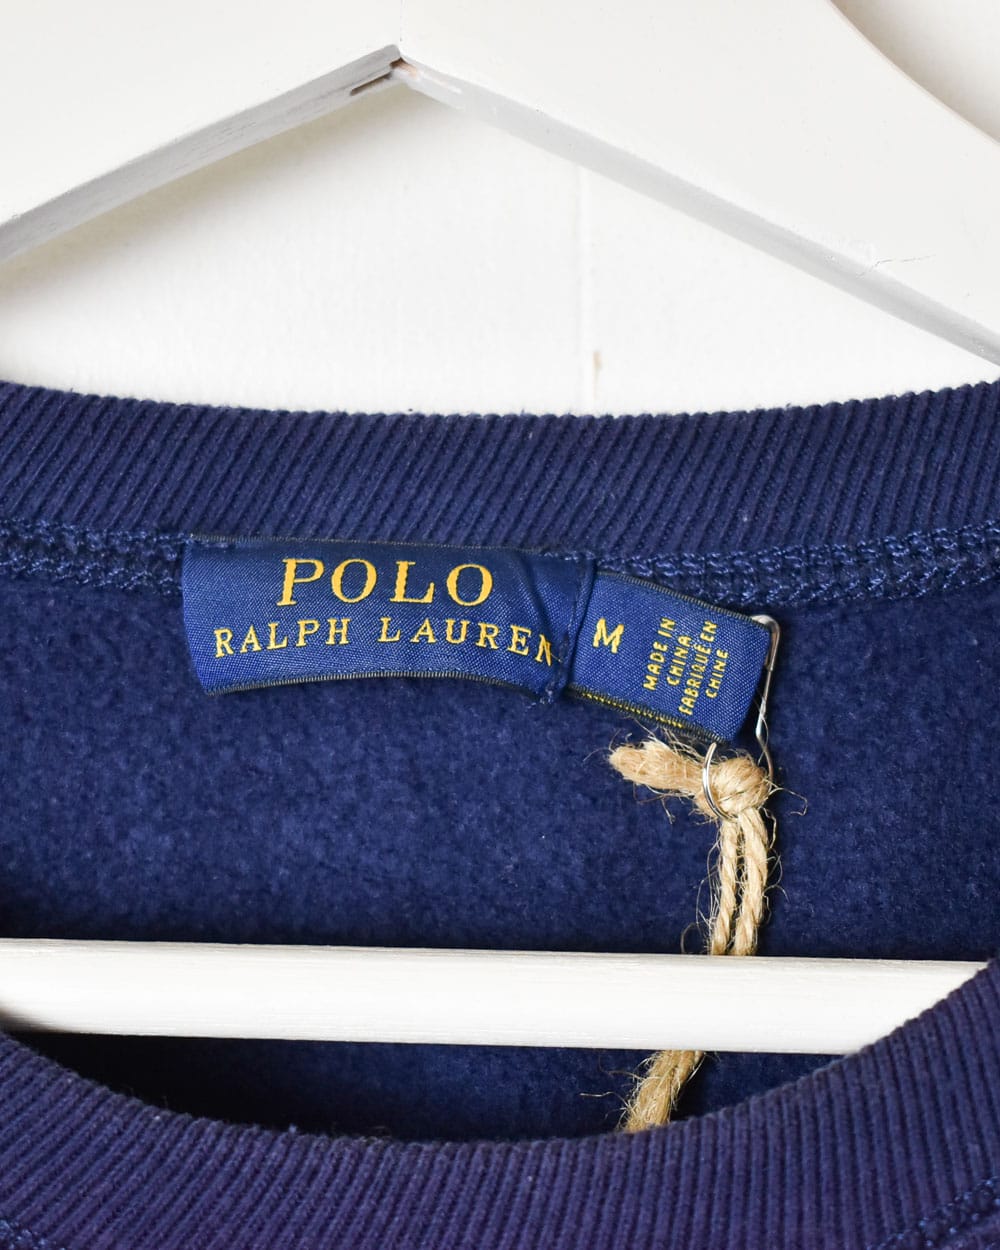 Navy Polo Ralph Lauren Sweatshirt - Small Women's